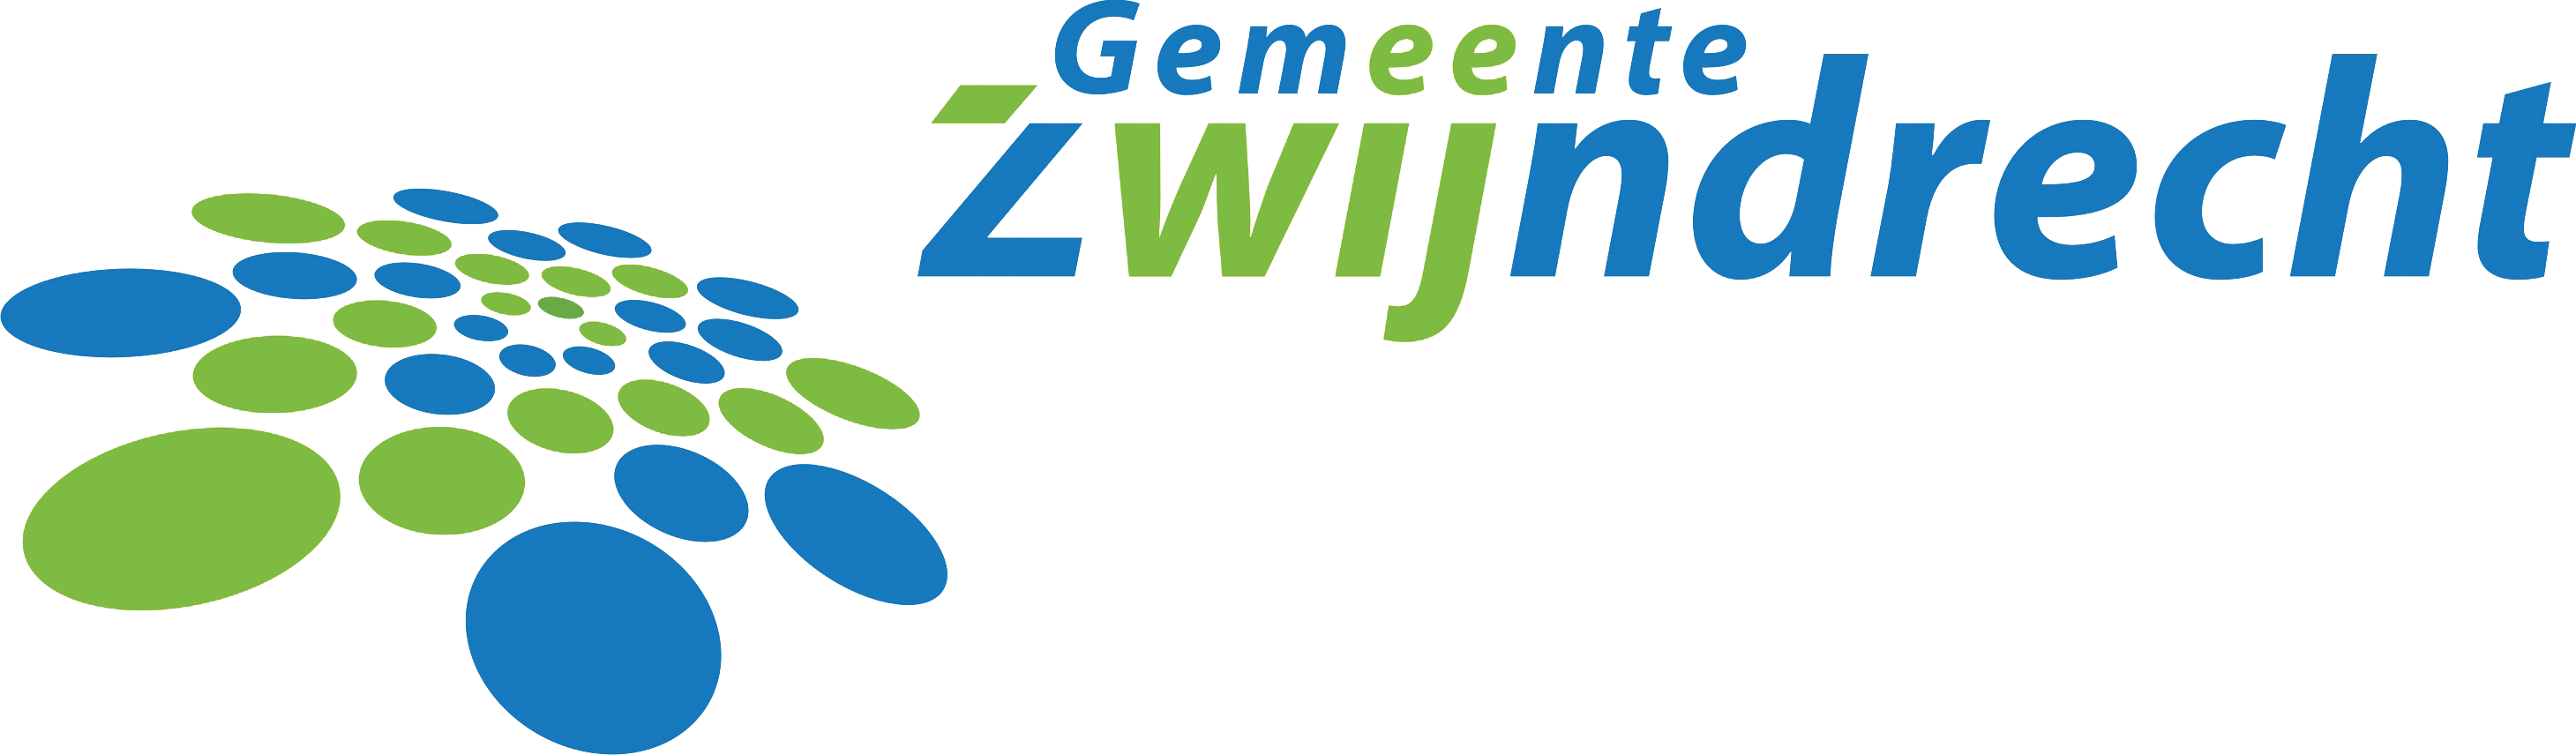 Wijkenwebsite Zwijndrecht logo